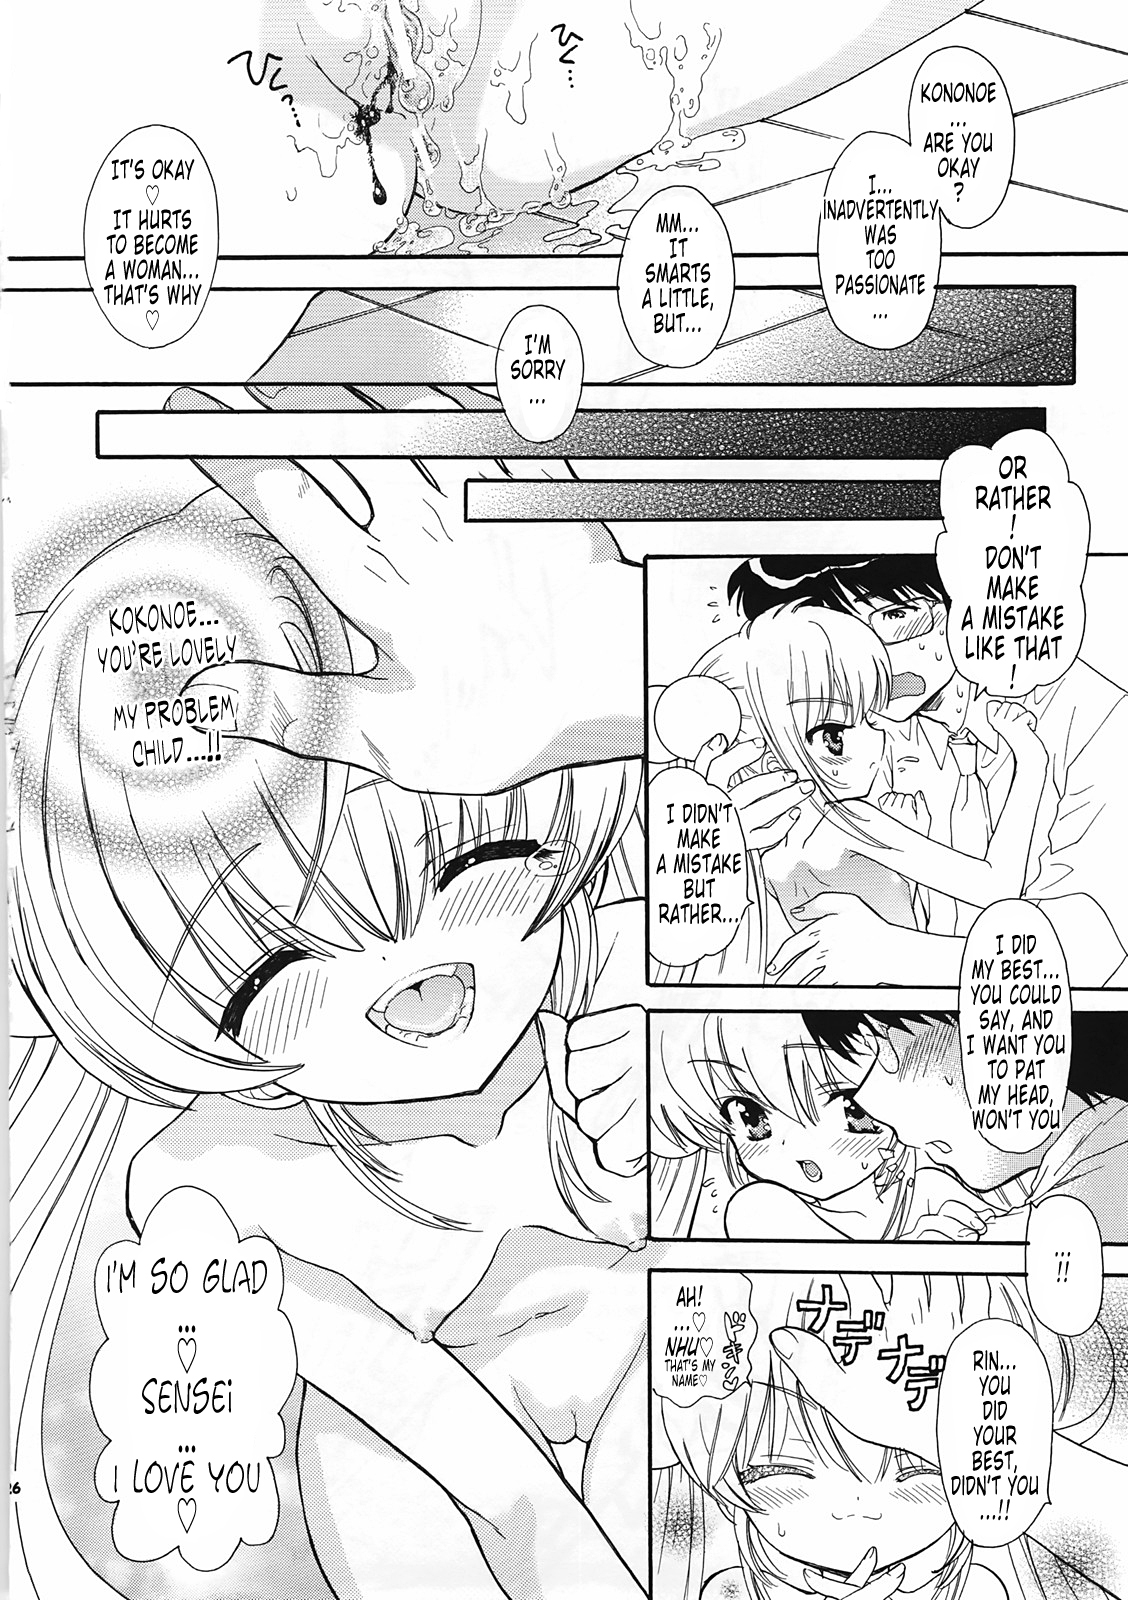 Sensei no Okiniiri Vol.2 kodomo no jikan 24 hentai manga